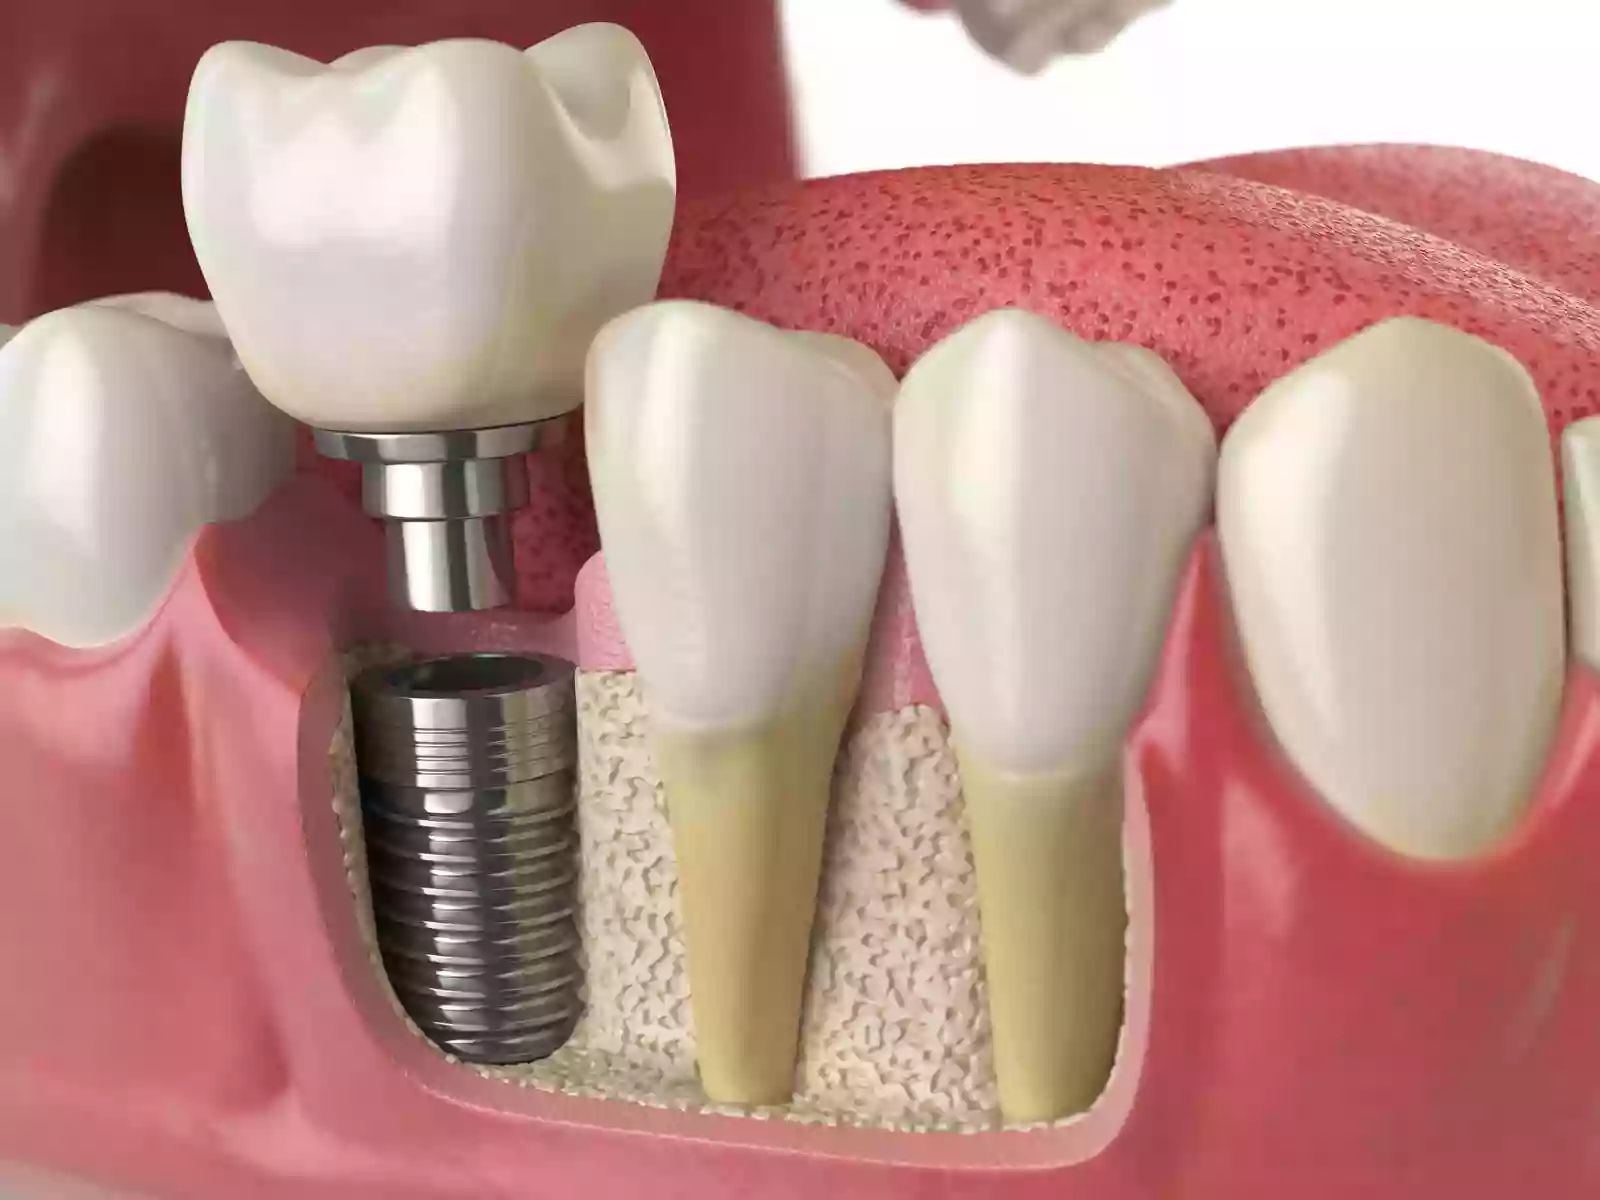 Dr. Evan Sachs Dental Implant Surgery